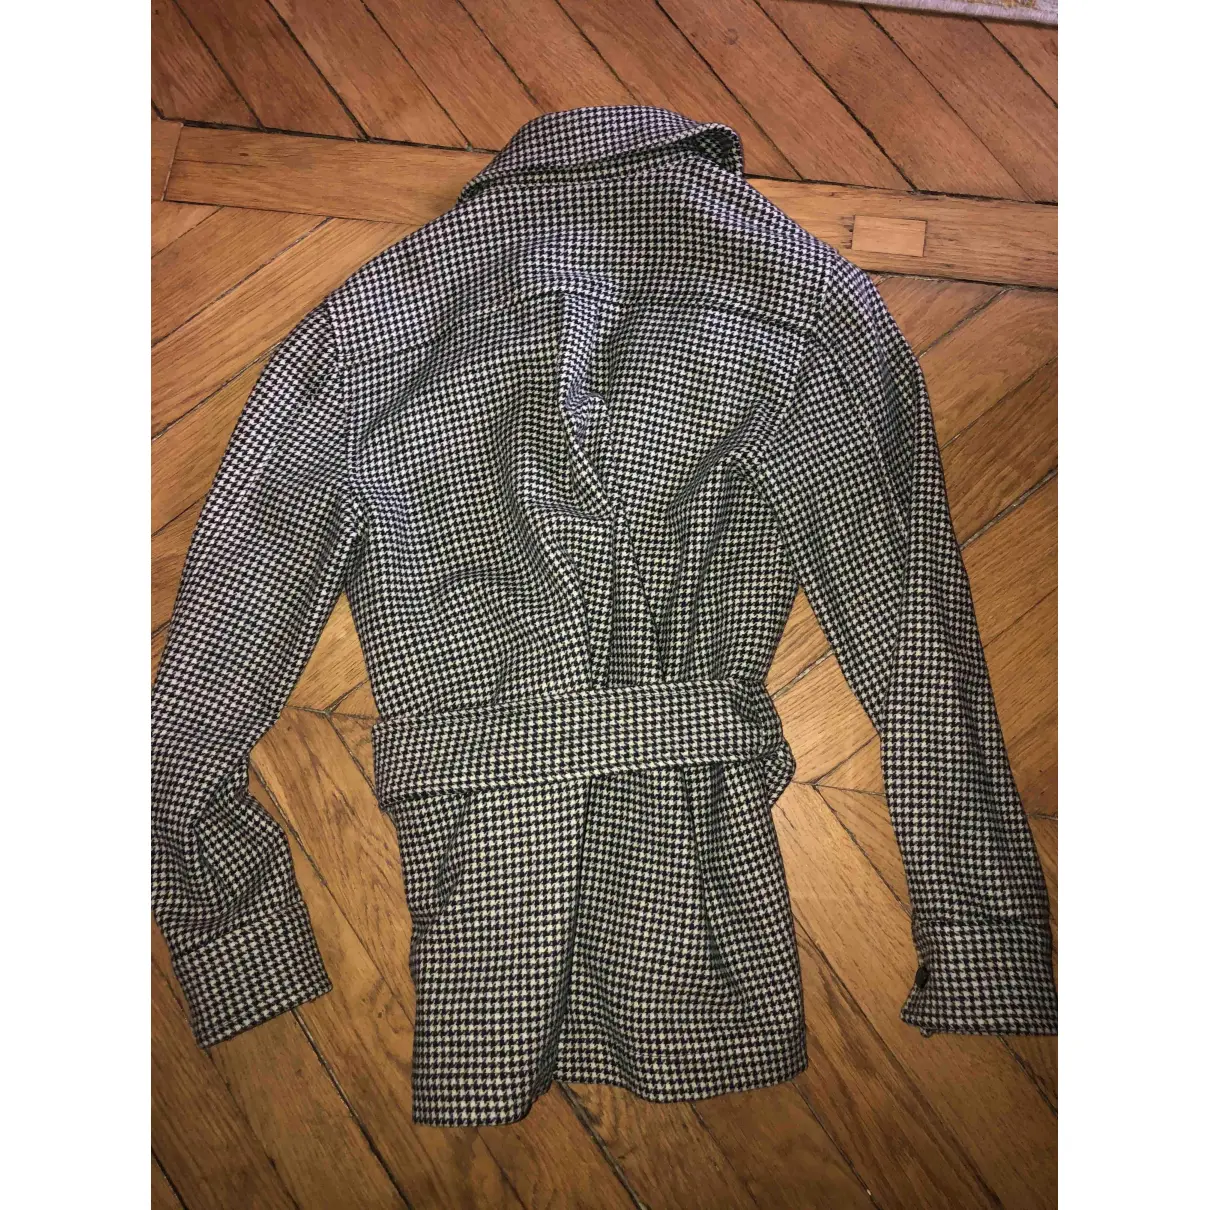 Buy Laurence Bras Wool suit jacket online